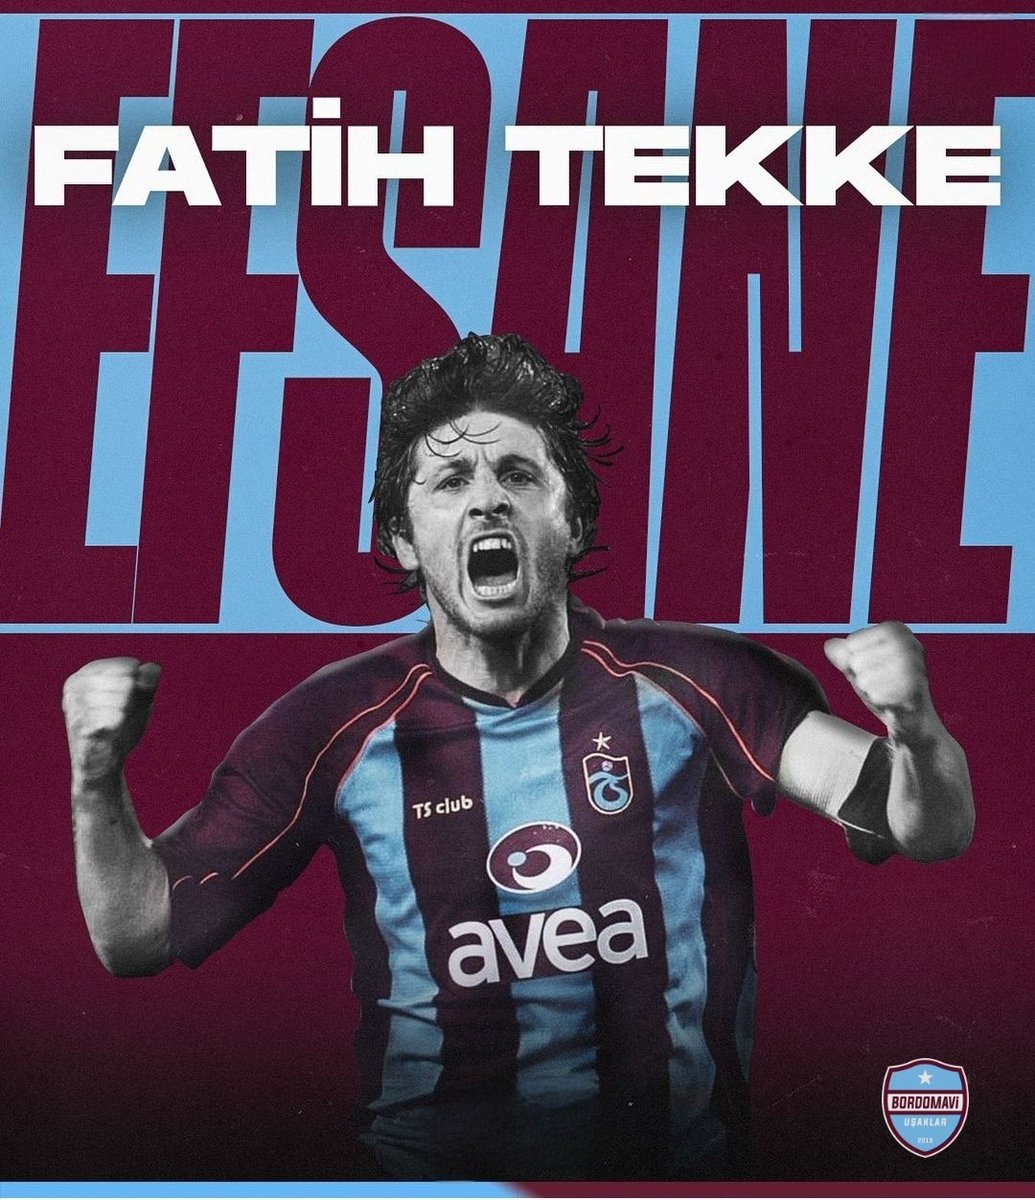 Fatih Tekke, Türk futbolunun en karakterli insanlarından biridir. Ona saldırmaya çalışanlar kayadan toz bile alamaz.